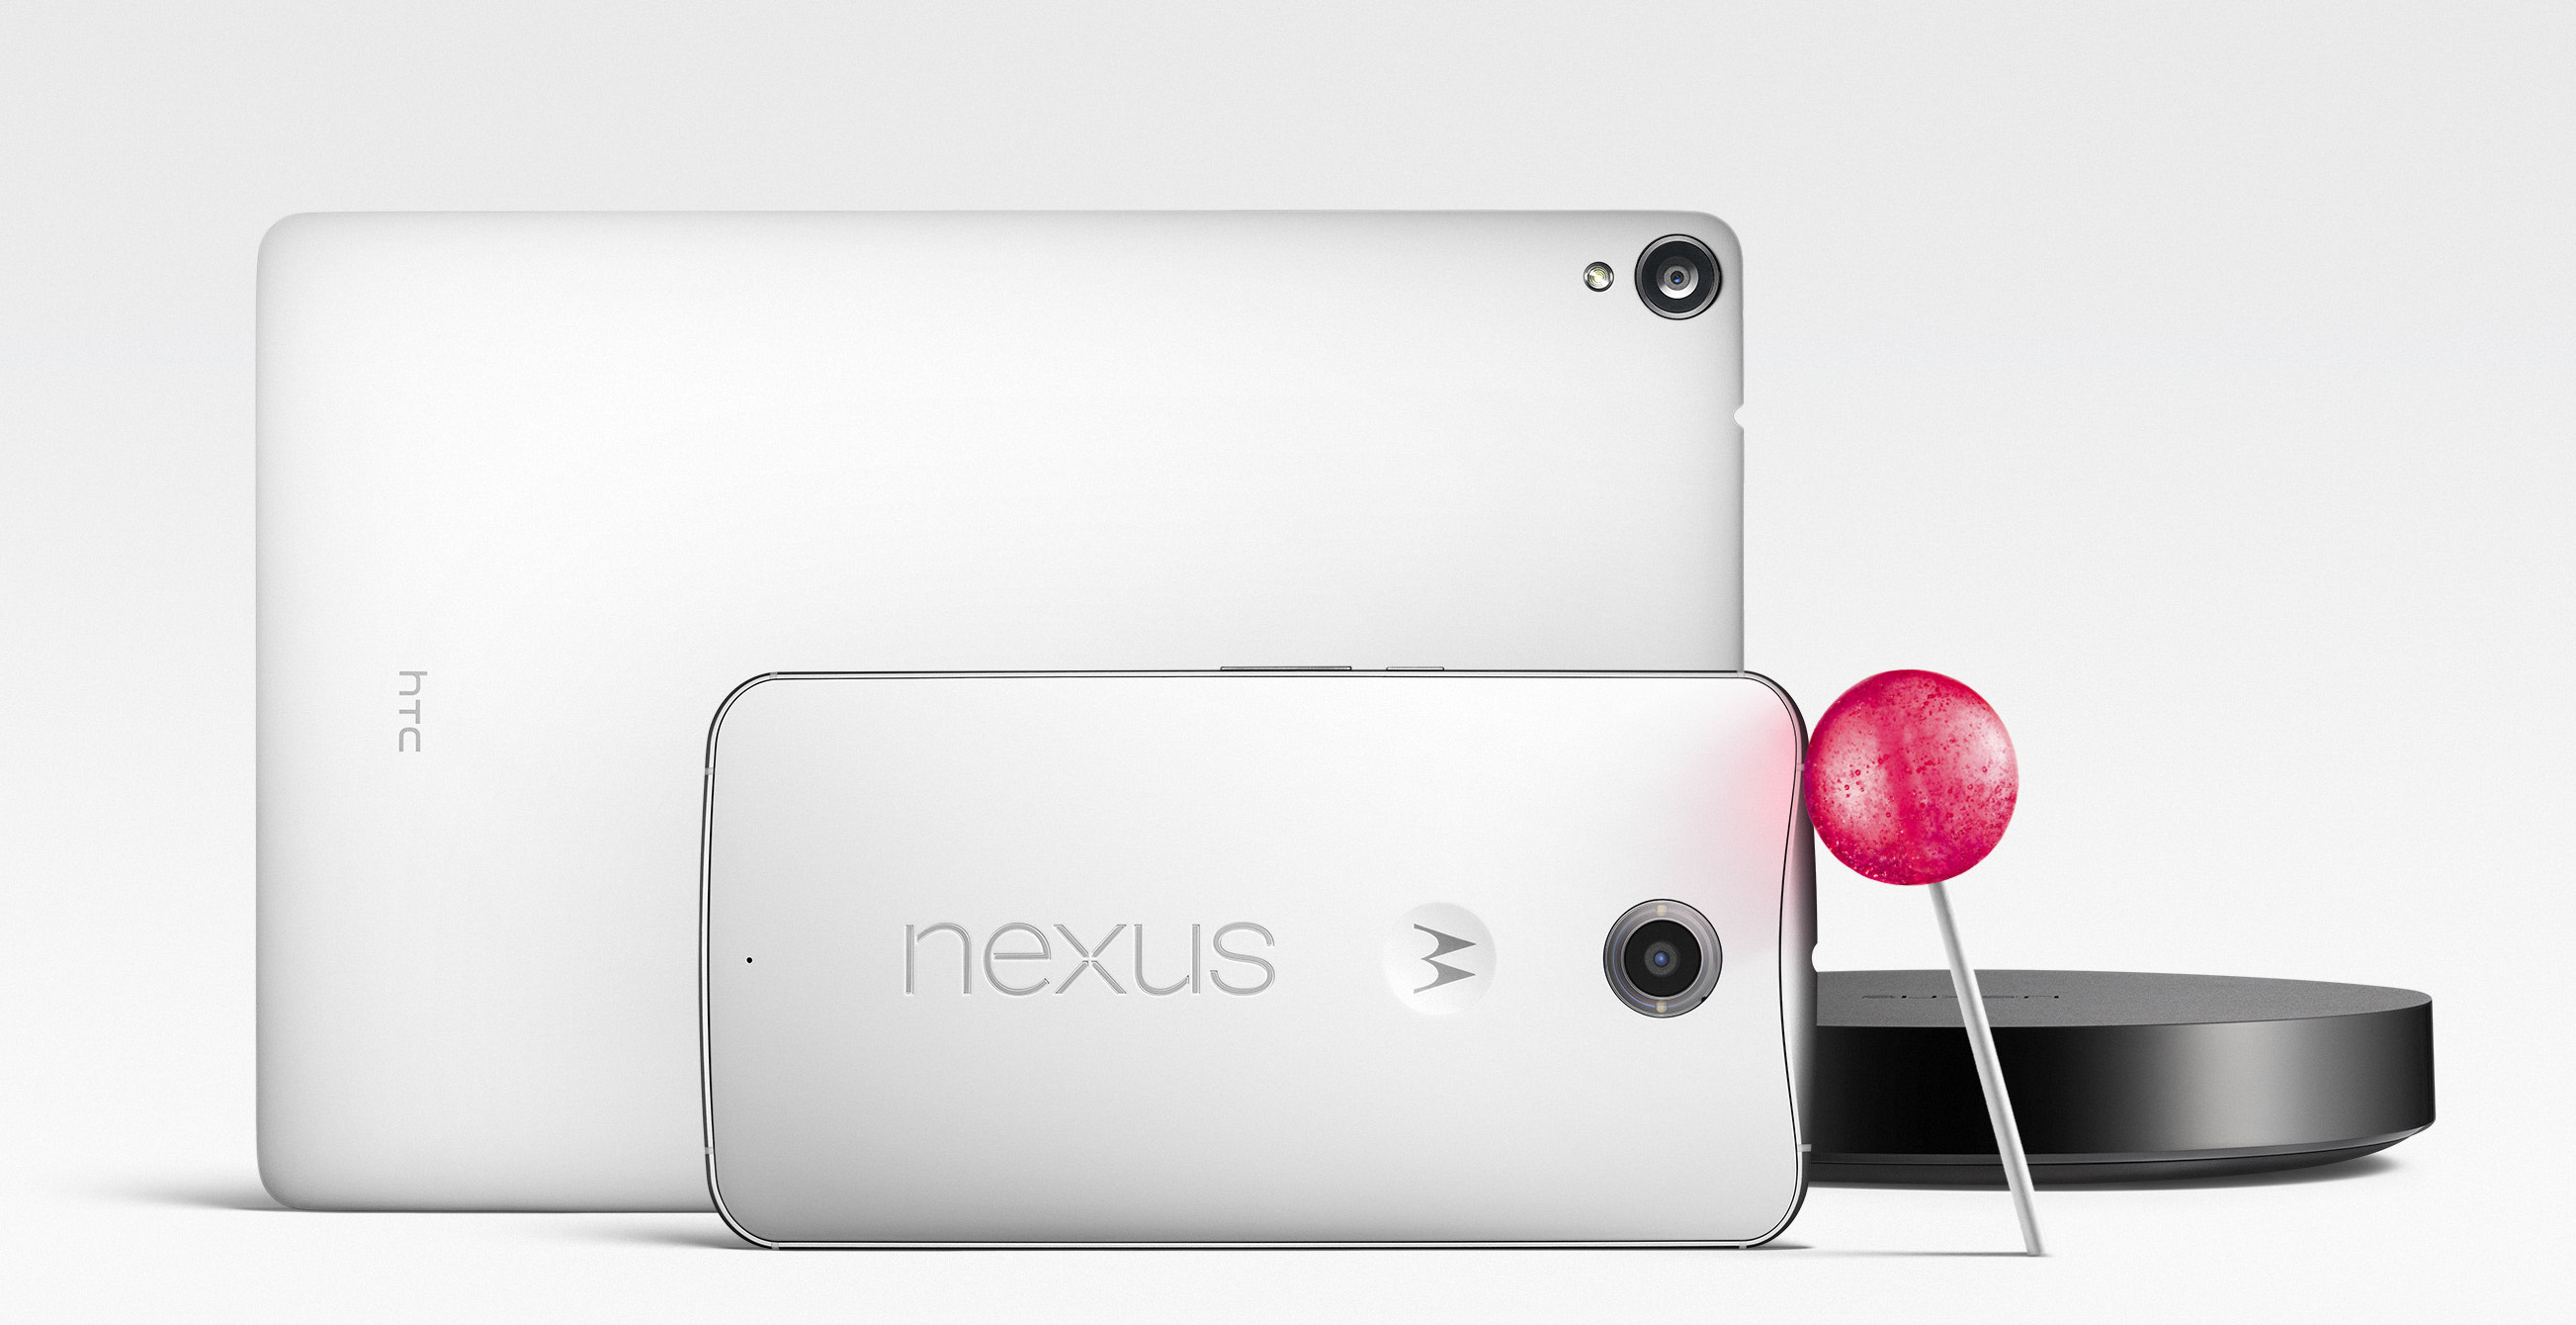  Android Lollipop e i nuovi NEXUS 6, 9 e Player: le novità di Google